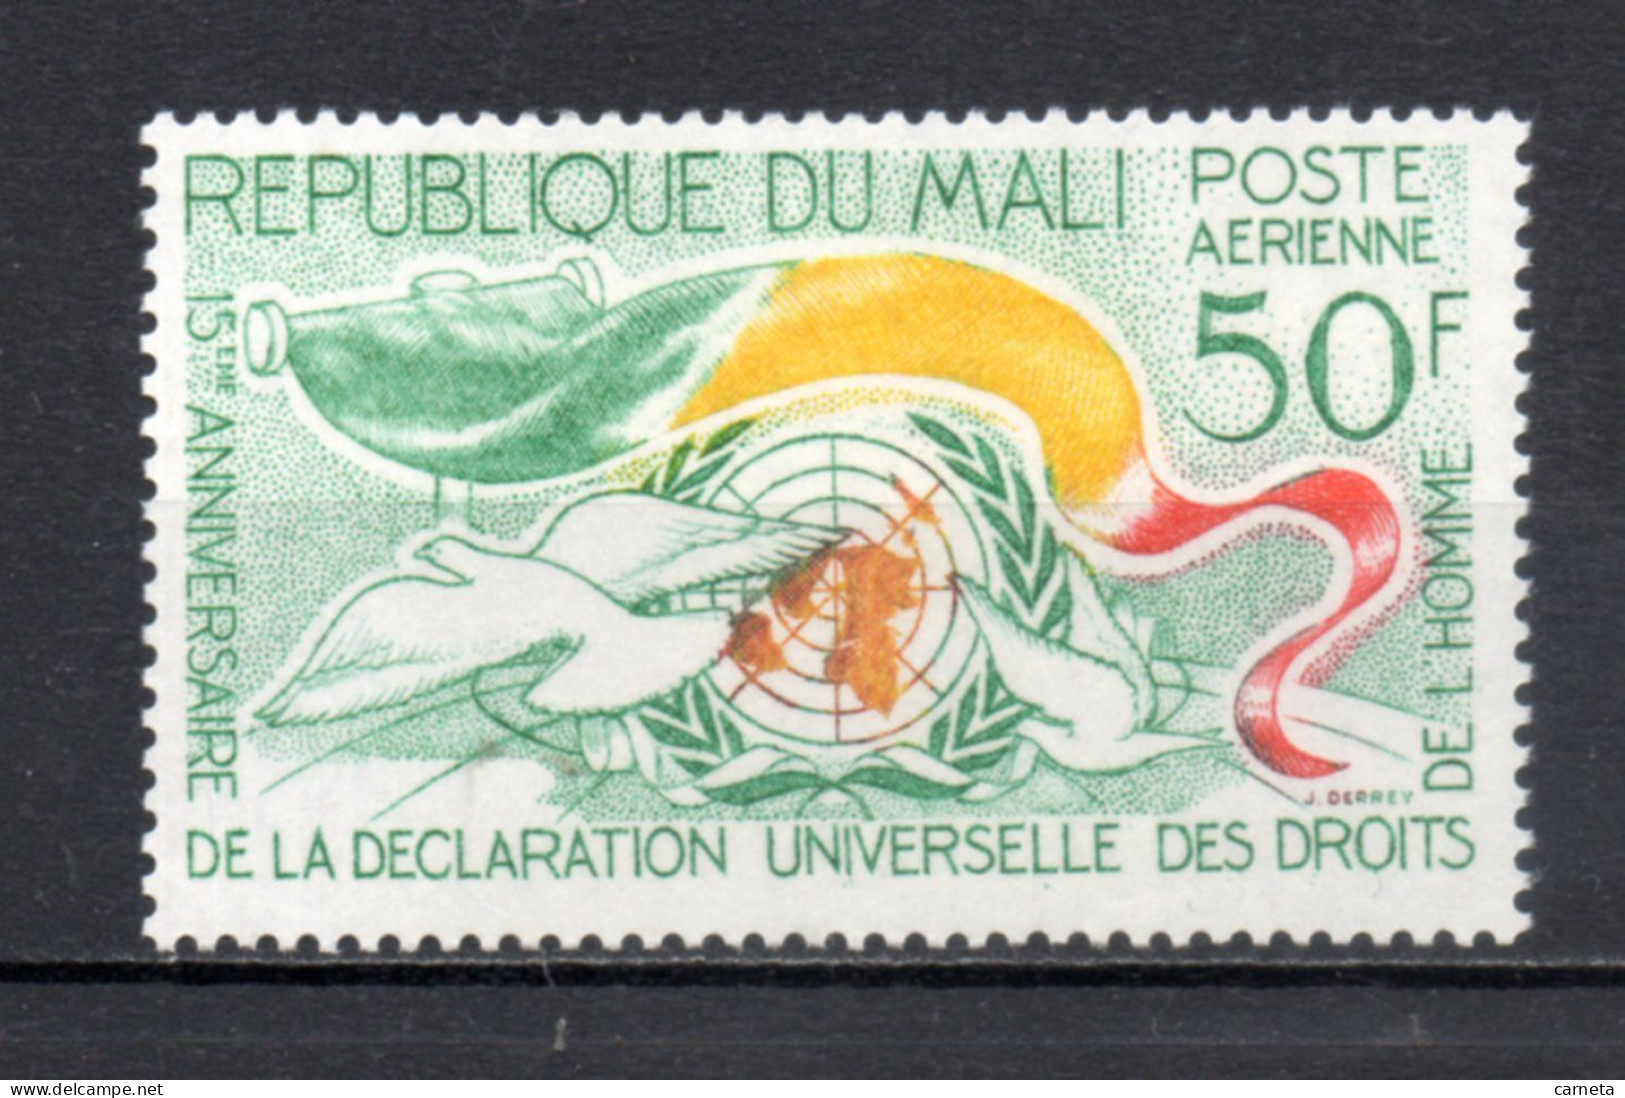 MALI  PA  N° 21   NEUF SANS CHARNIERE  COTE 1.80€    DROITS DE L'HOMME  VOIR DESCRIPTION - Mali (1959-...)